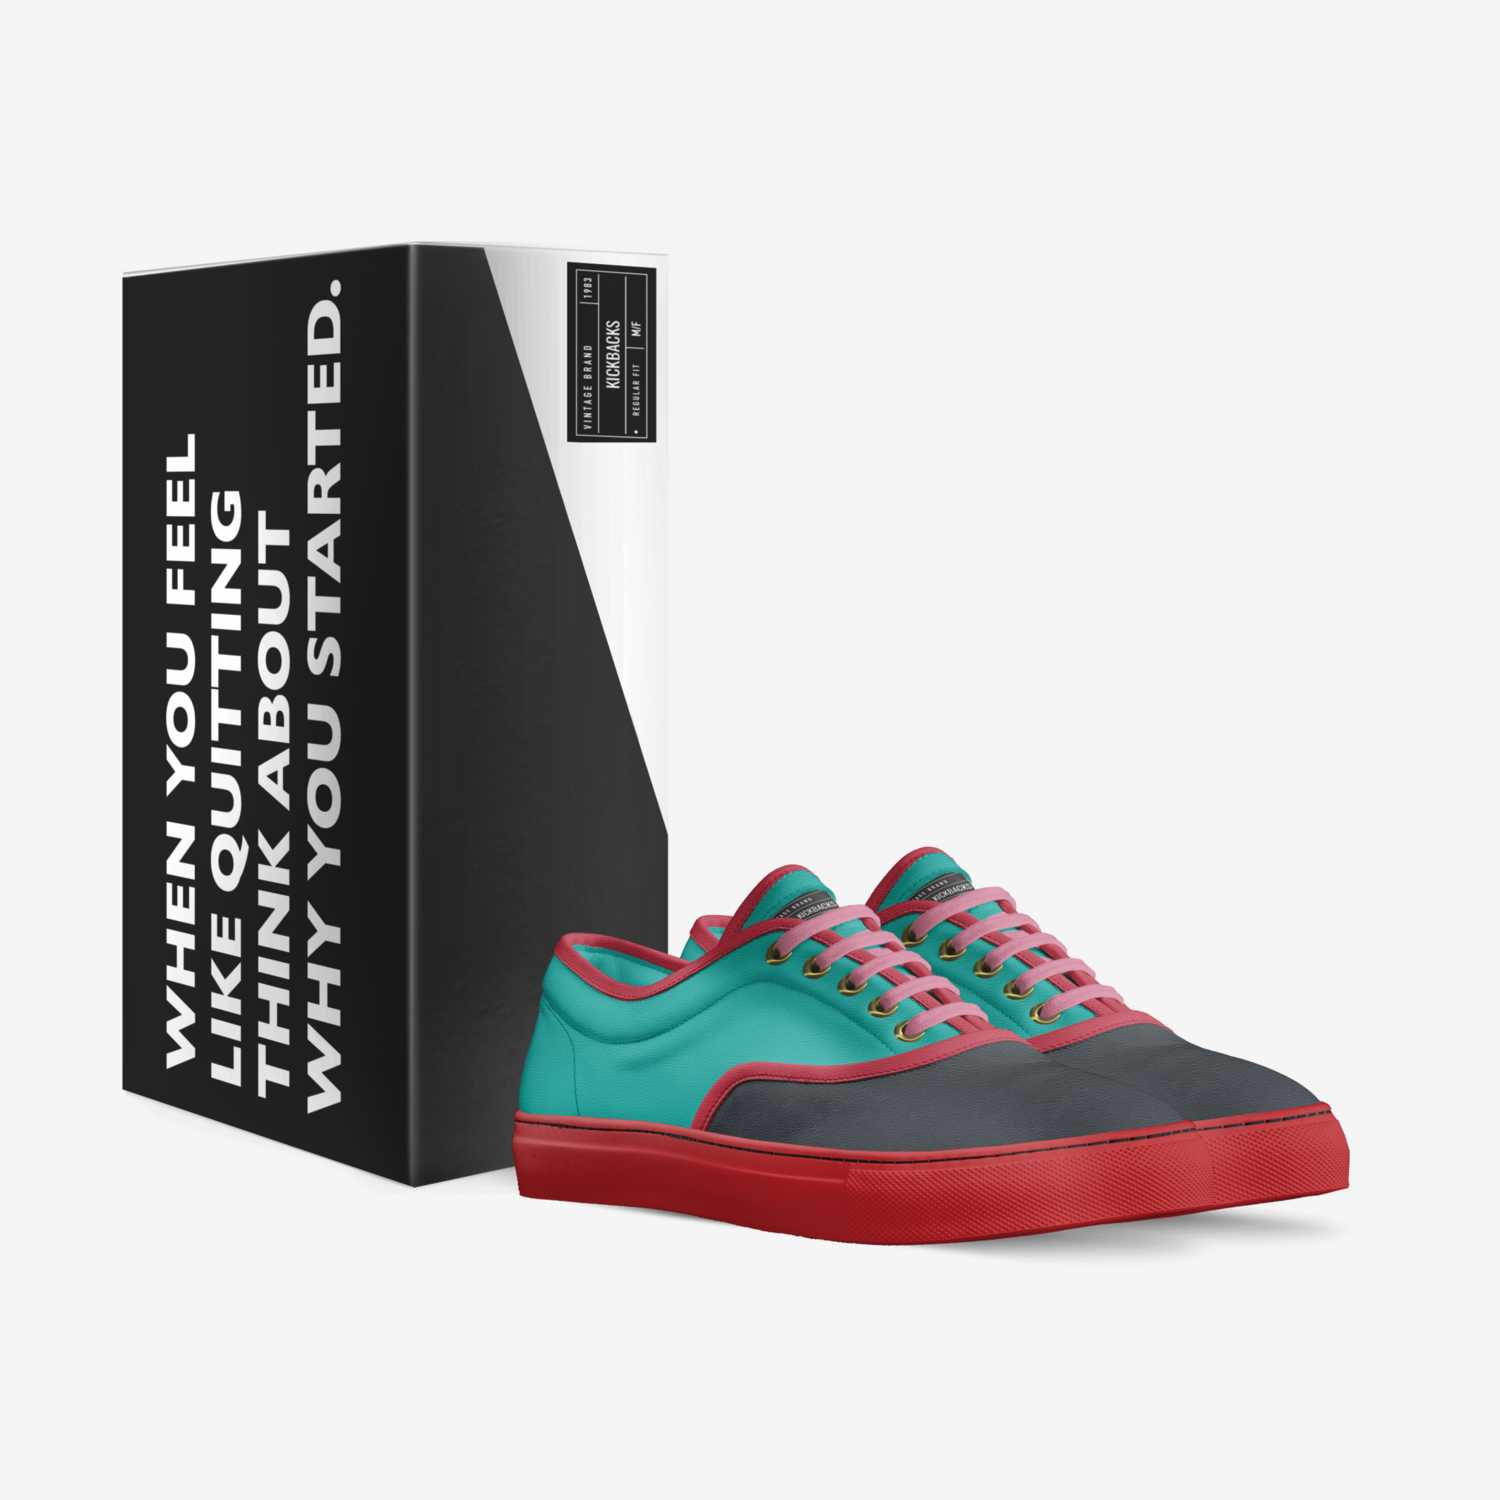 Kickbacks custom made in Italy shoes by Mia | Box view